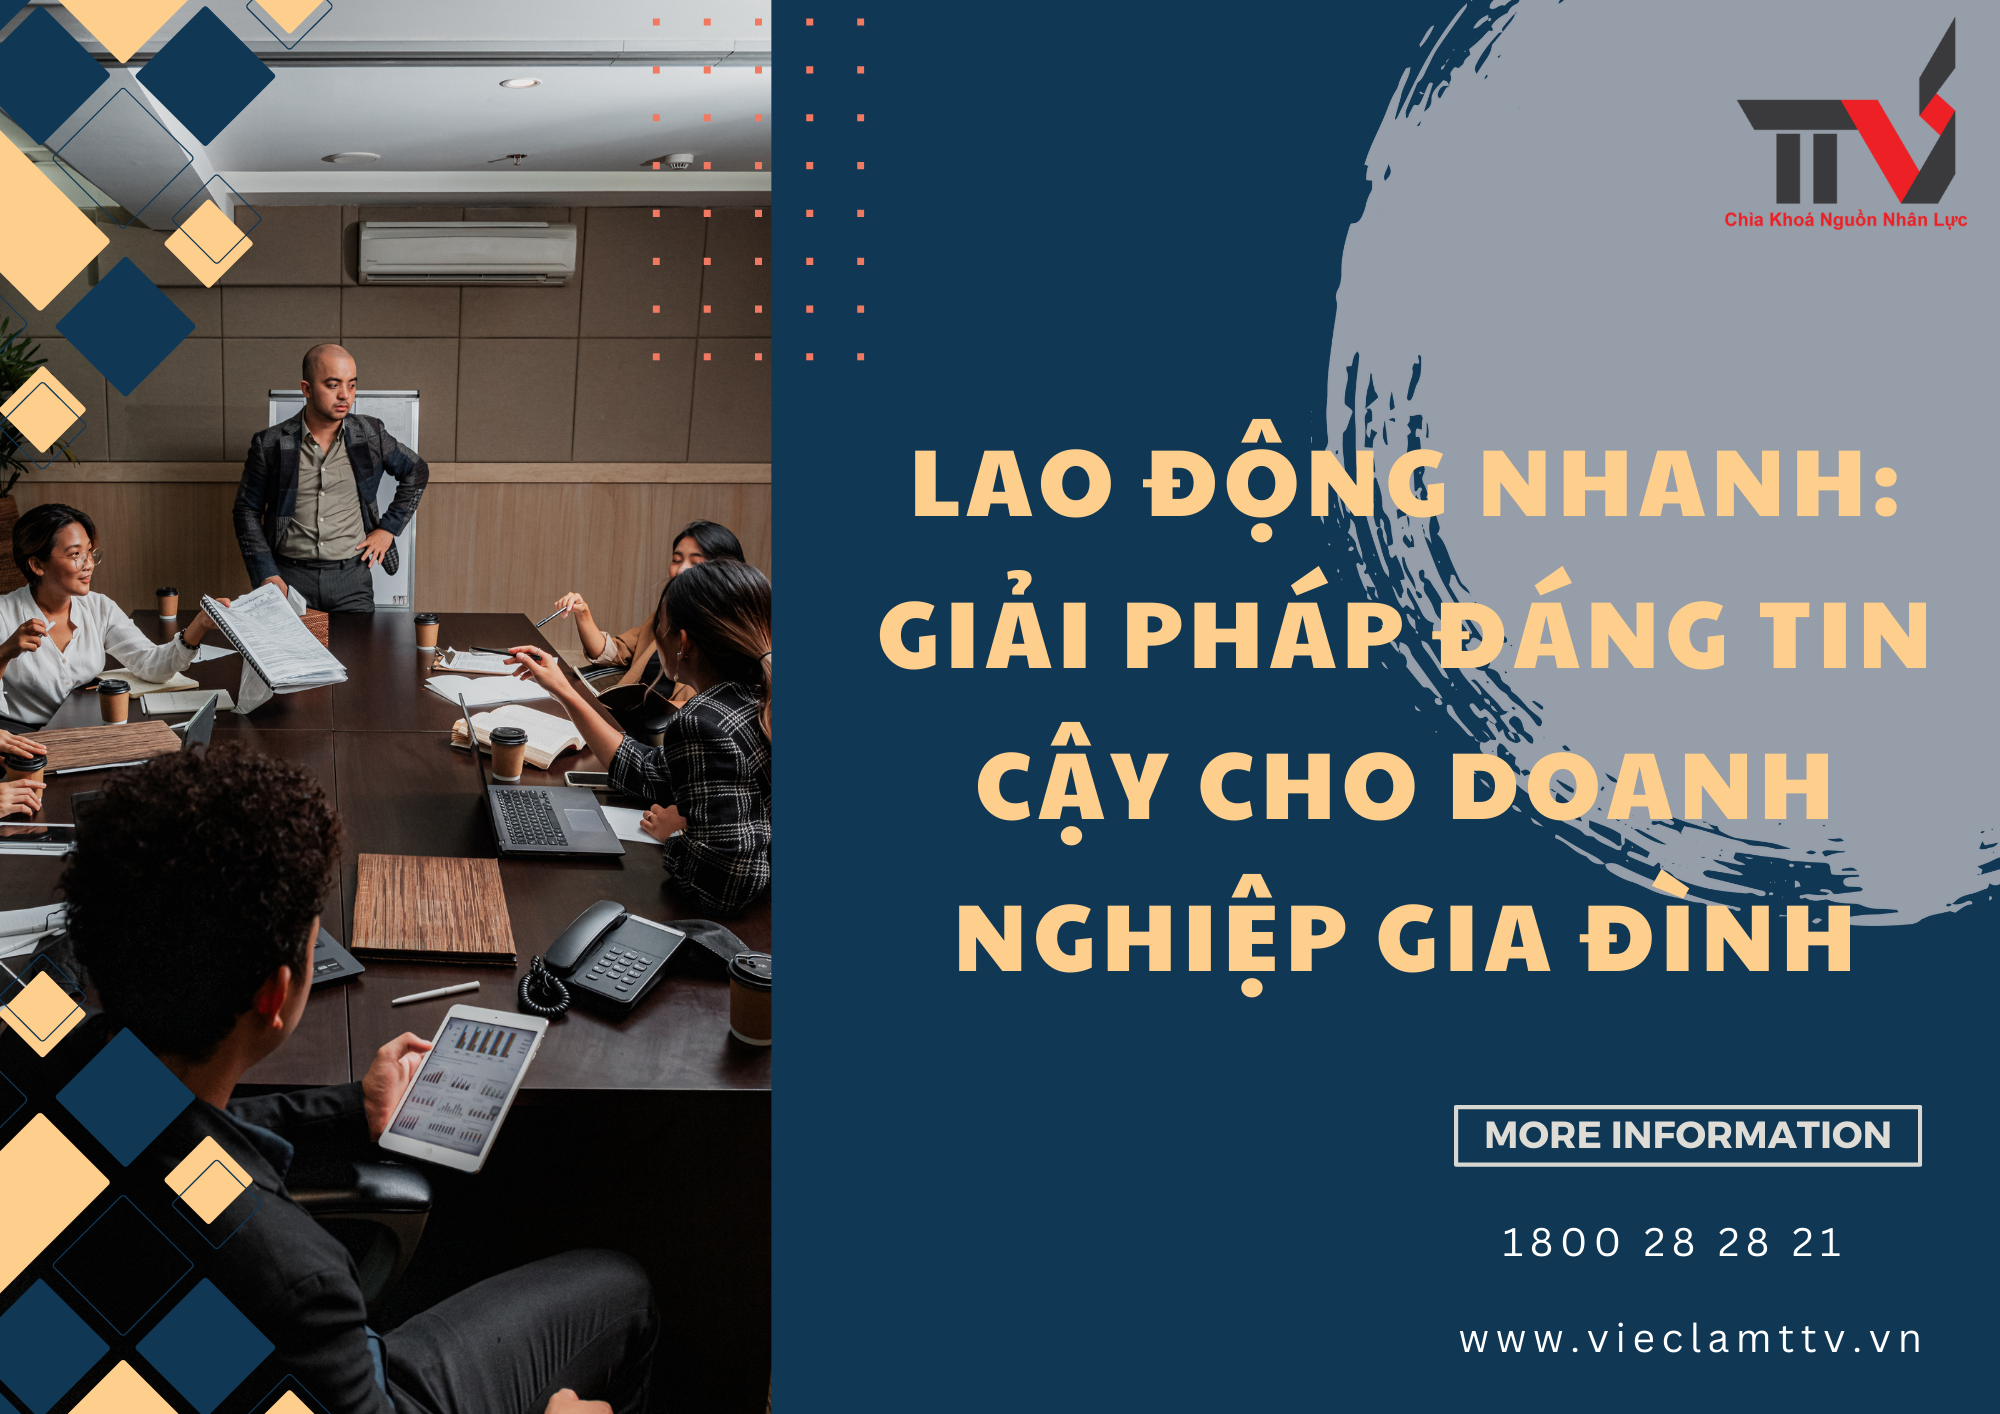 Lao động nhanh: Giải pháp đáng tin cậy cho doanh nghiệp gia đình tại khu vực Hồ Chí Minh, Bình Dương, Đồng Nai